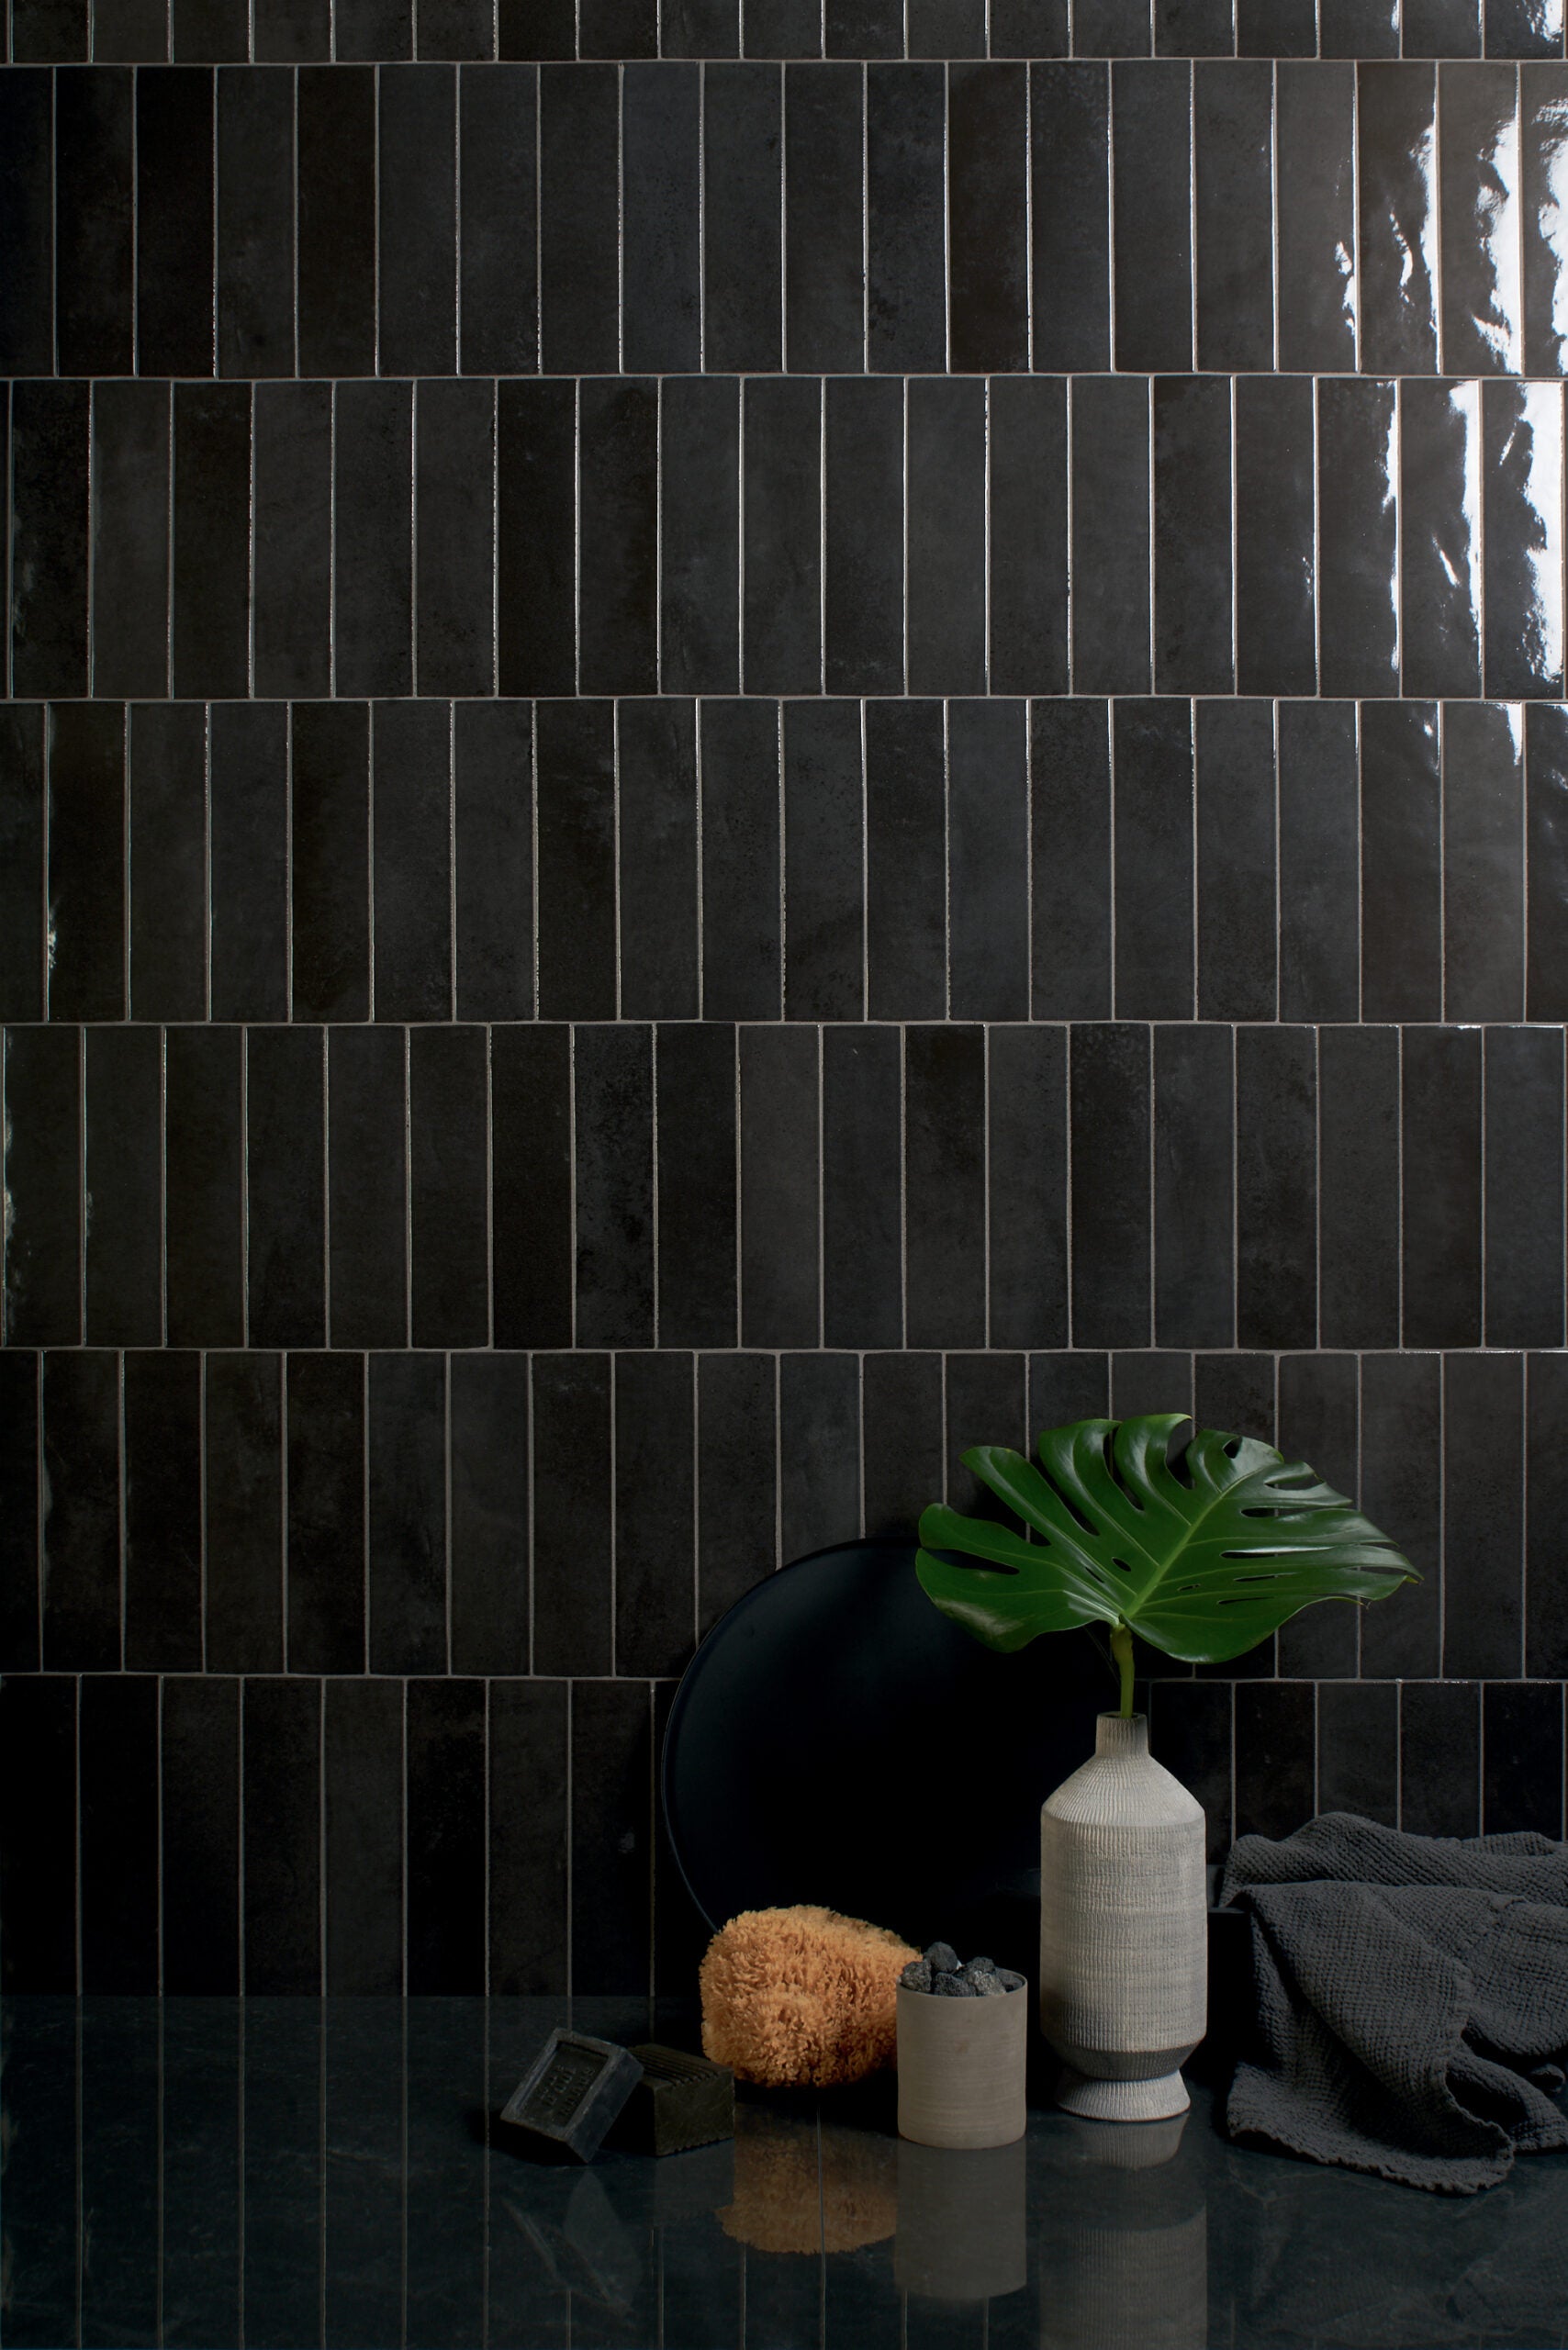 Muro revestido con azulejos de color negro de alto brillo, acentuado con accesorios decorativos en tonos gris, verde y negro que destacan y se complementan entre sí.